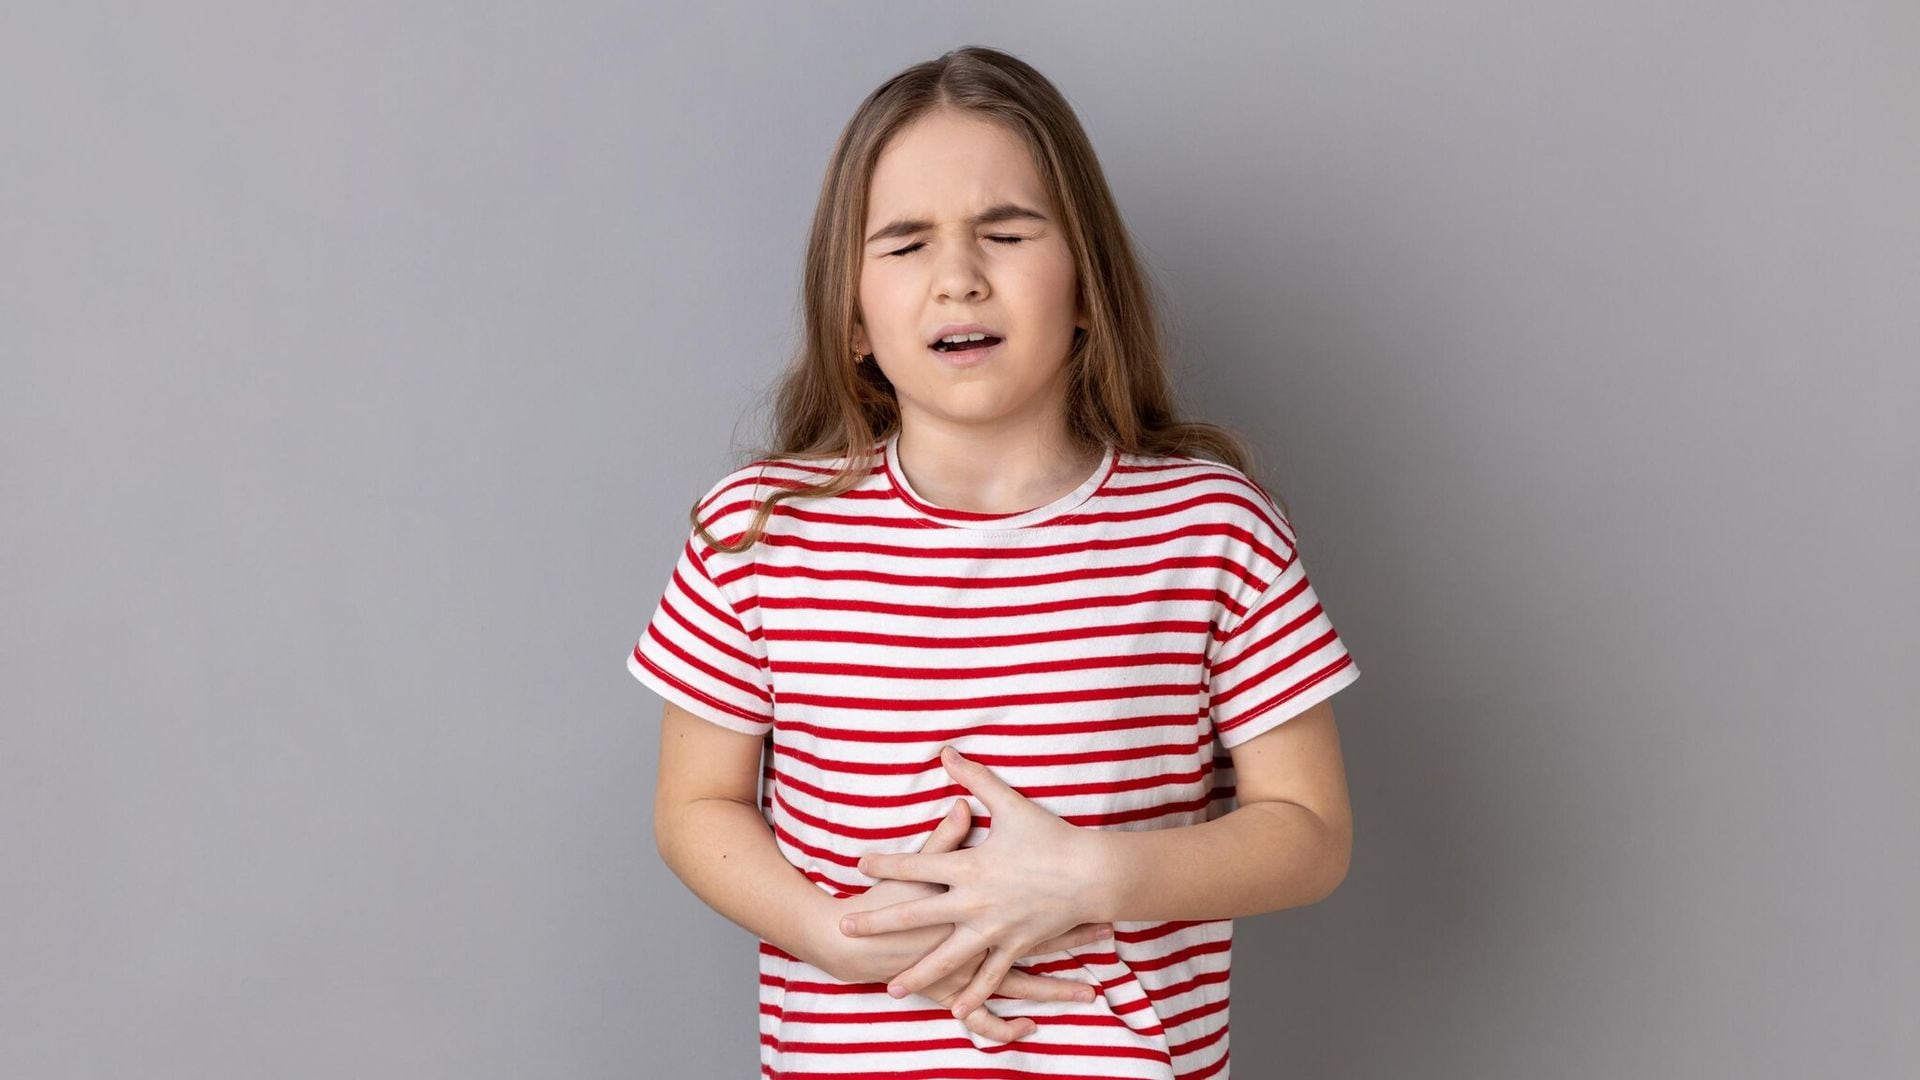 Apendicitis niños: signos de alerta y cómo actuar rápido